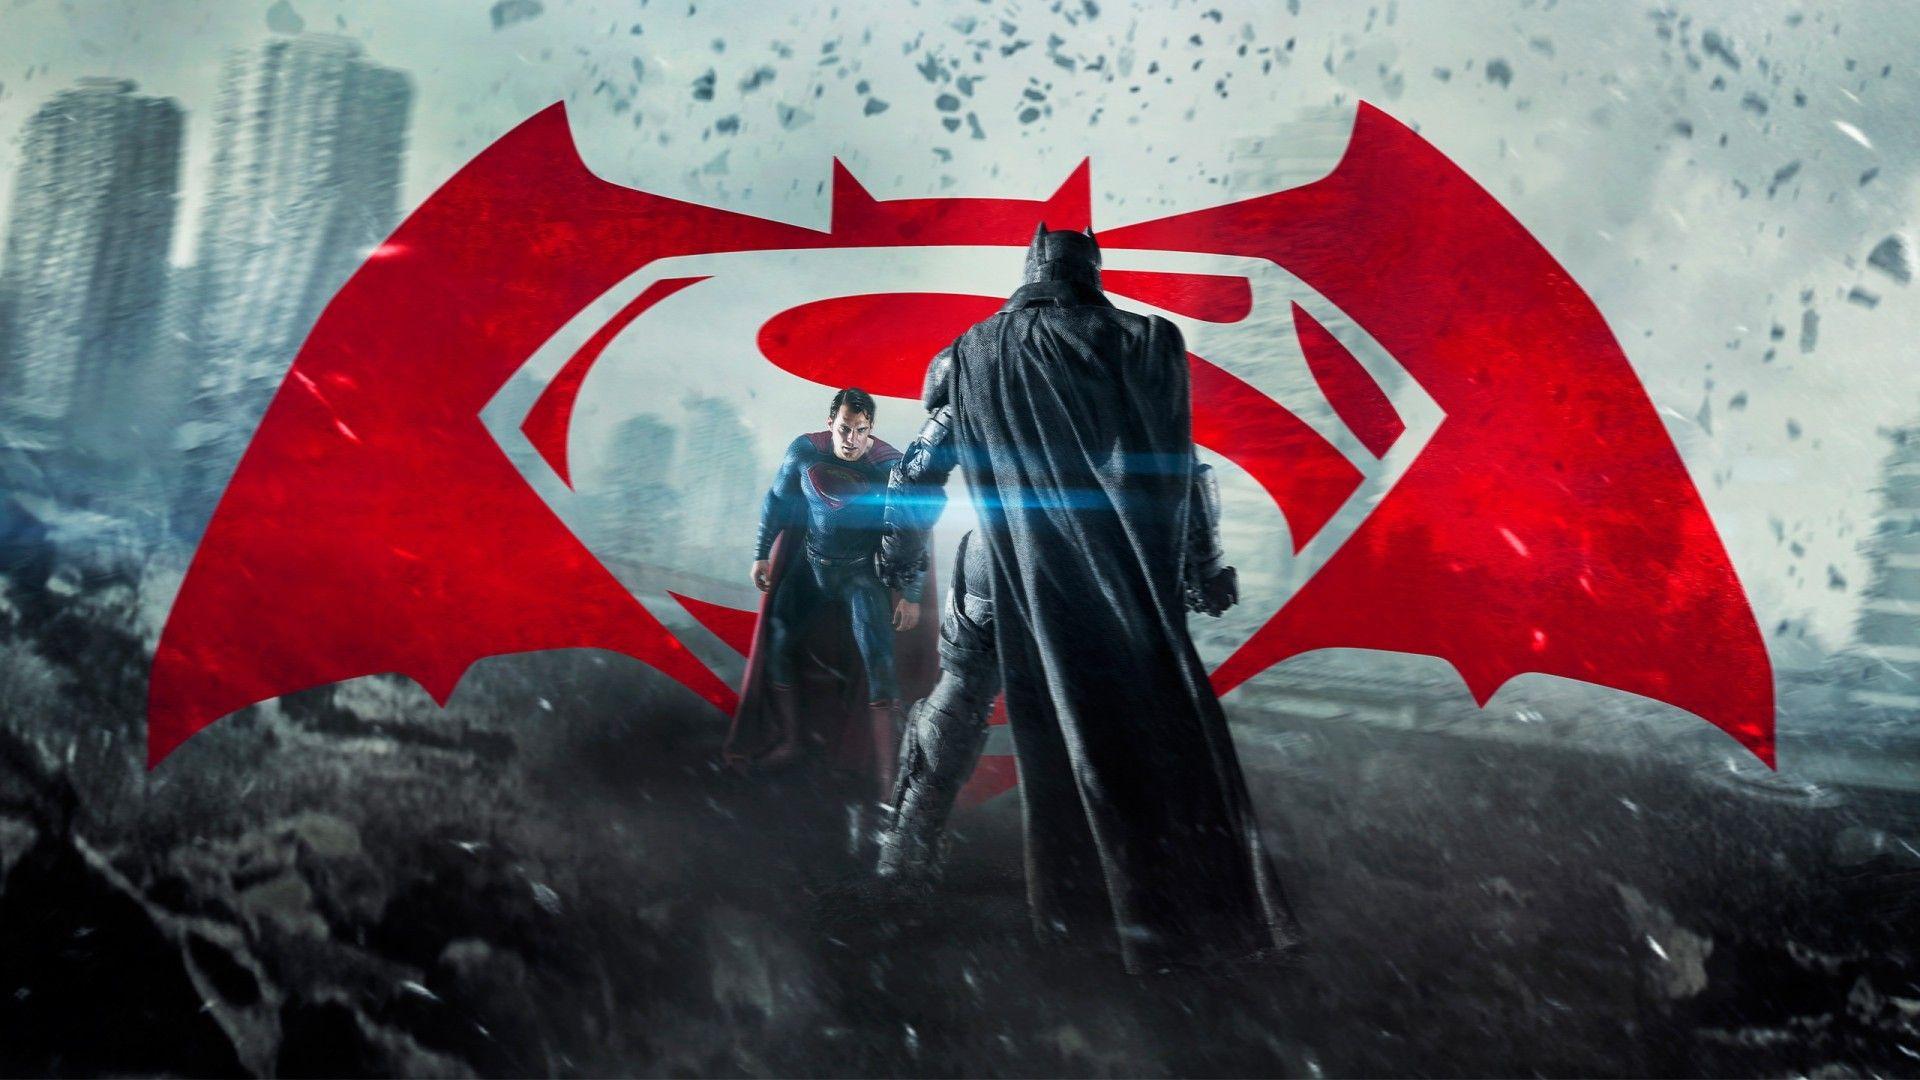 Batman Vs Superman Logo Wallpapers - Wallpaper Cave